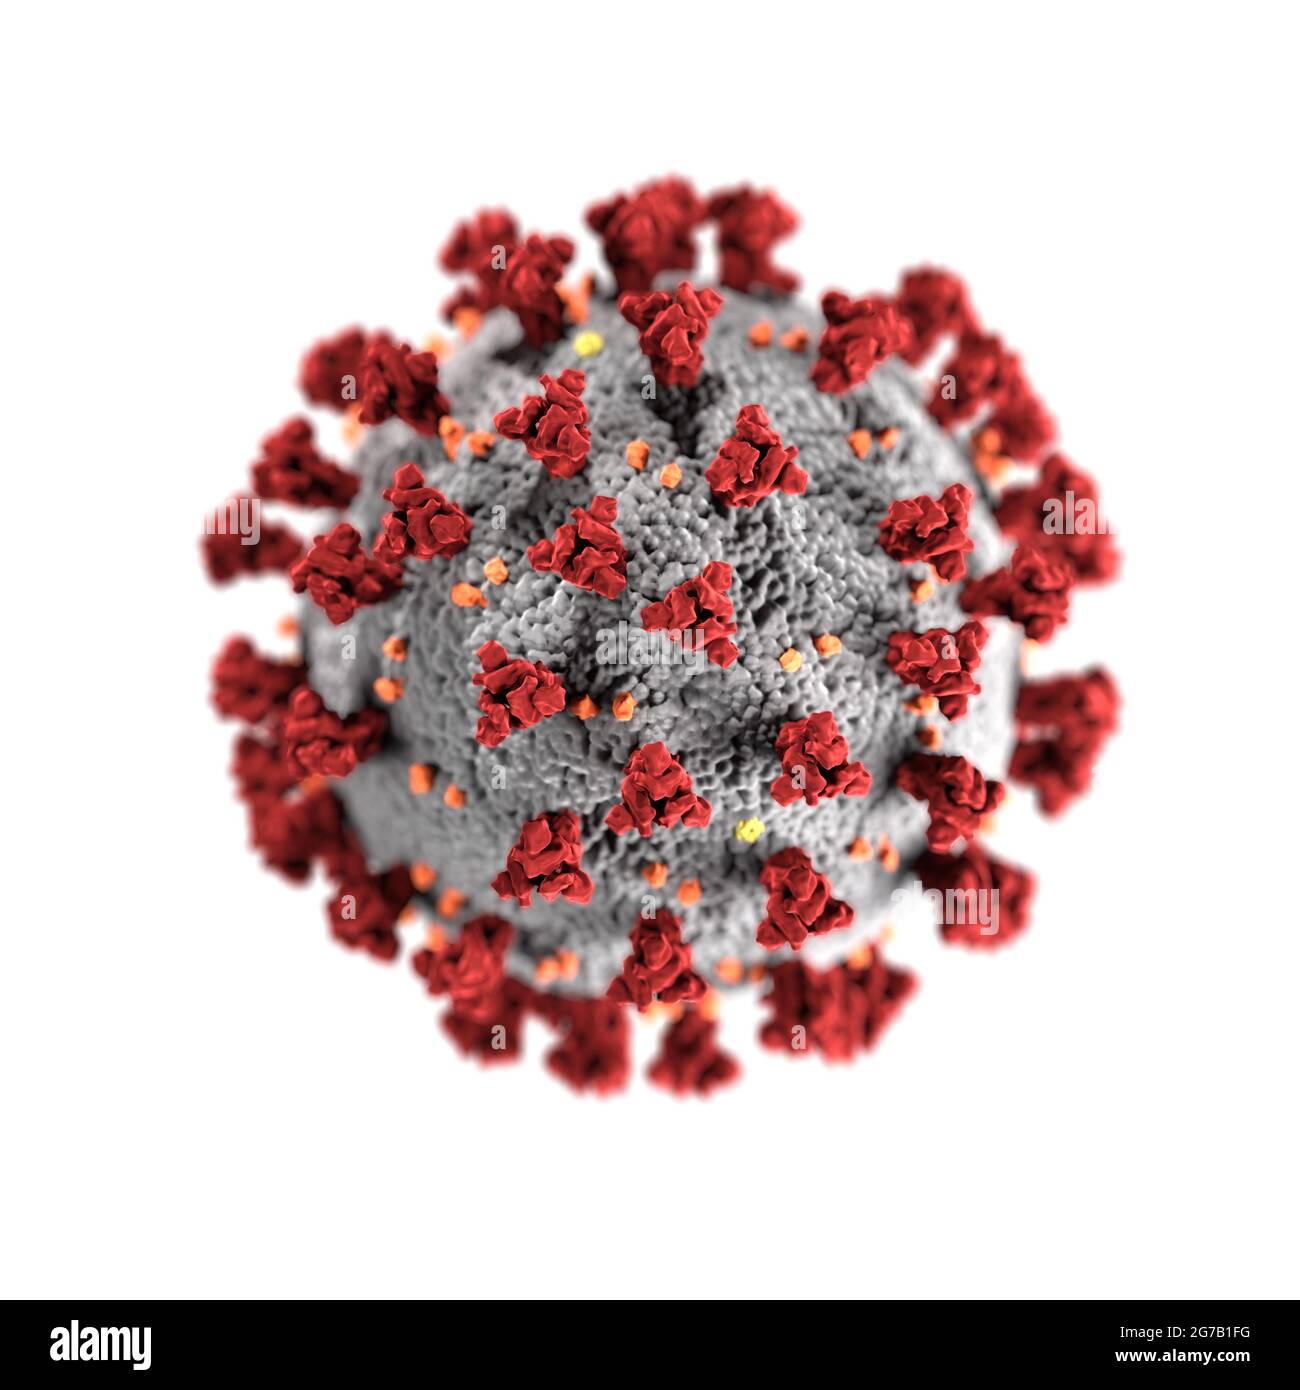 Cette illustration, créée aux Centers for Disease Control and Prevention (CDC) des États-Unis, révèle la morphologie ultrastructurale exposée par les coronavirus. Un nouveau coronavirus, appelé coronavirus 2 du syndrome respiratoire aigu sévère (COV-SRAS-2), a été identifié comme la cause d'une éclosion de maladie respiratoire détectée pour la première fois à Wuhan, en Chine, en 2019. La maladie causée par ce virus a été nommée coronavirus Disease 2019 (COVID-19). Une version optimisée et améliorée d'une image produite par les Centers for Disease Control and Prevention / Credit: CDC Banque D'Images